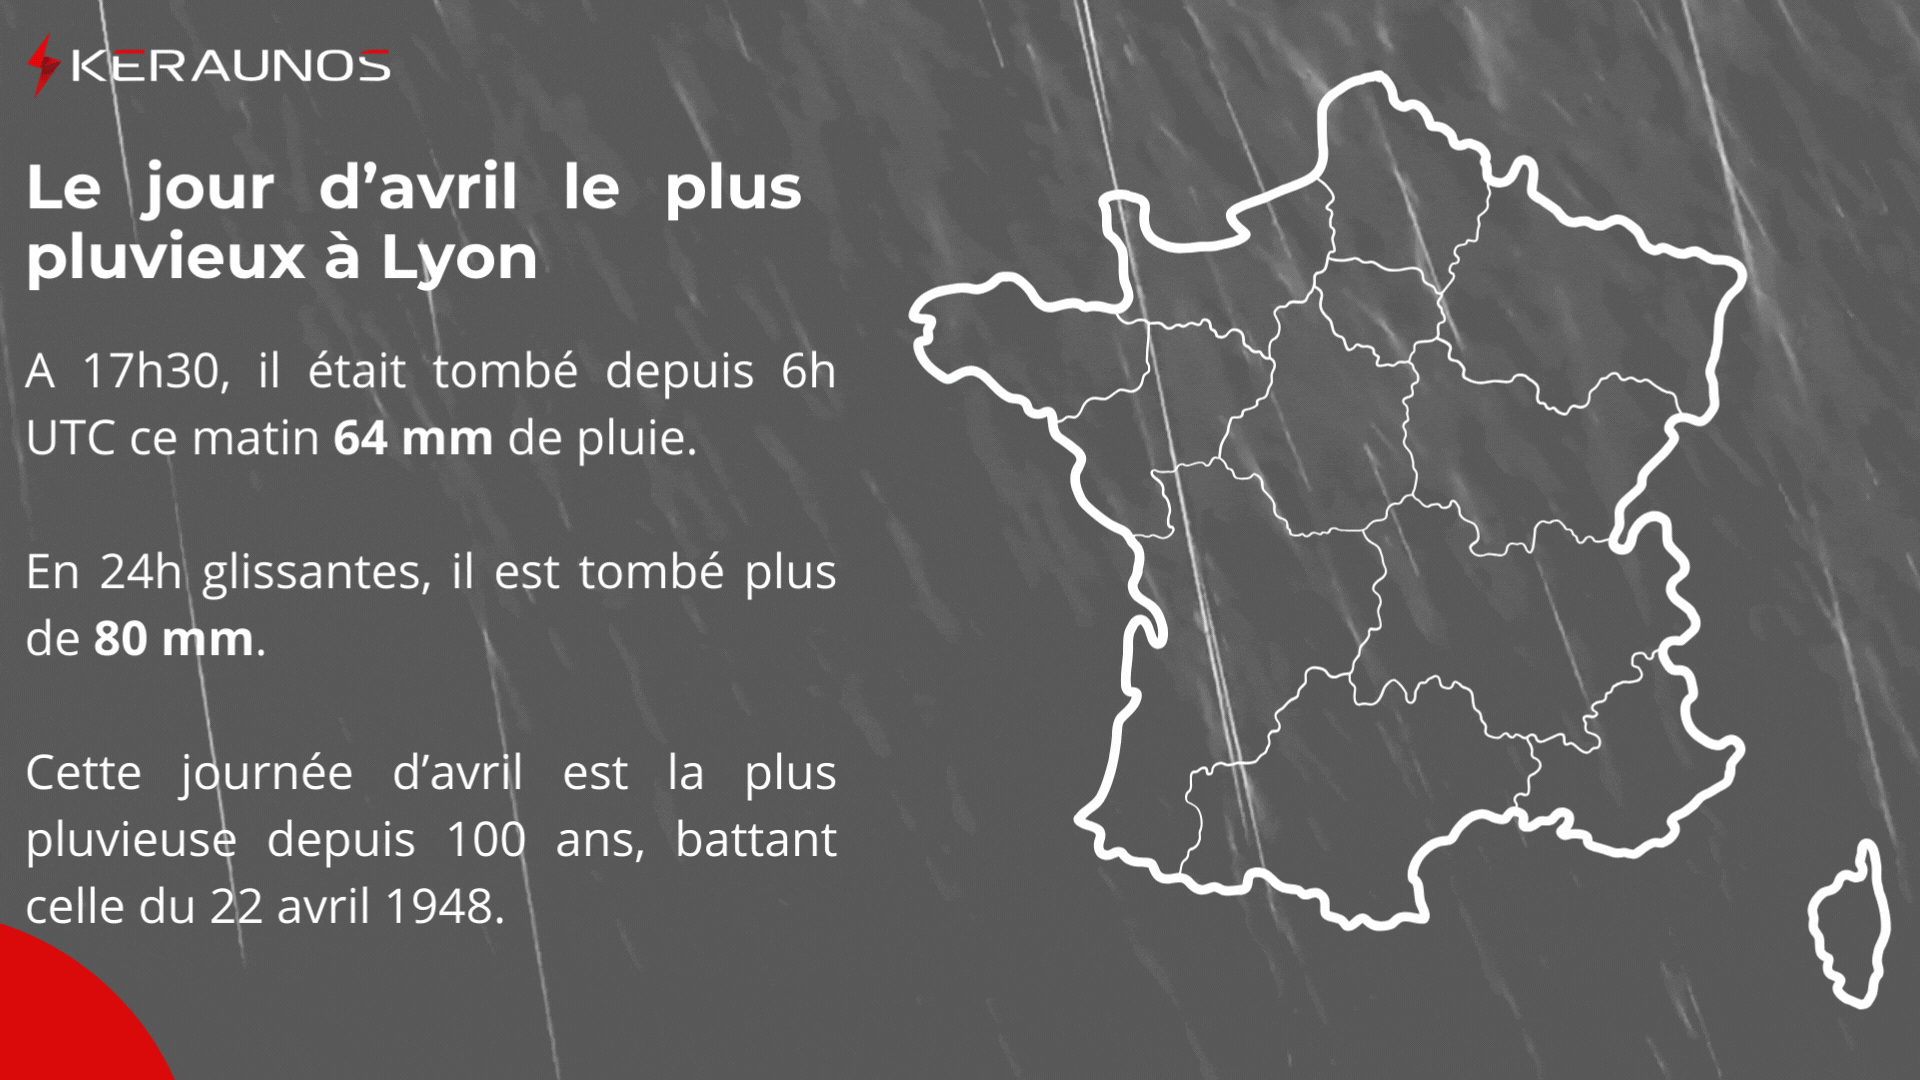 <p>Beaucoup de pluie ce dimanche sur le centre-est. La journée climatologique ne se finit que demain matin à 6h UTC. Et Lyon a déjà battu son record de pluie en 24h avec 64 mm (relevé à 17h30).</p>
<p>En 24h glissantes, le cumuls dépasse 80 mm. Ce 28 avril devient la journée d'avril la plus pluvieuse à Lyon Bron, battant les 55.9 mm du 22 avril 1948.</p>